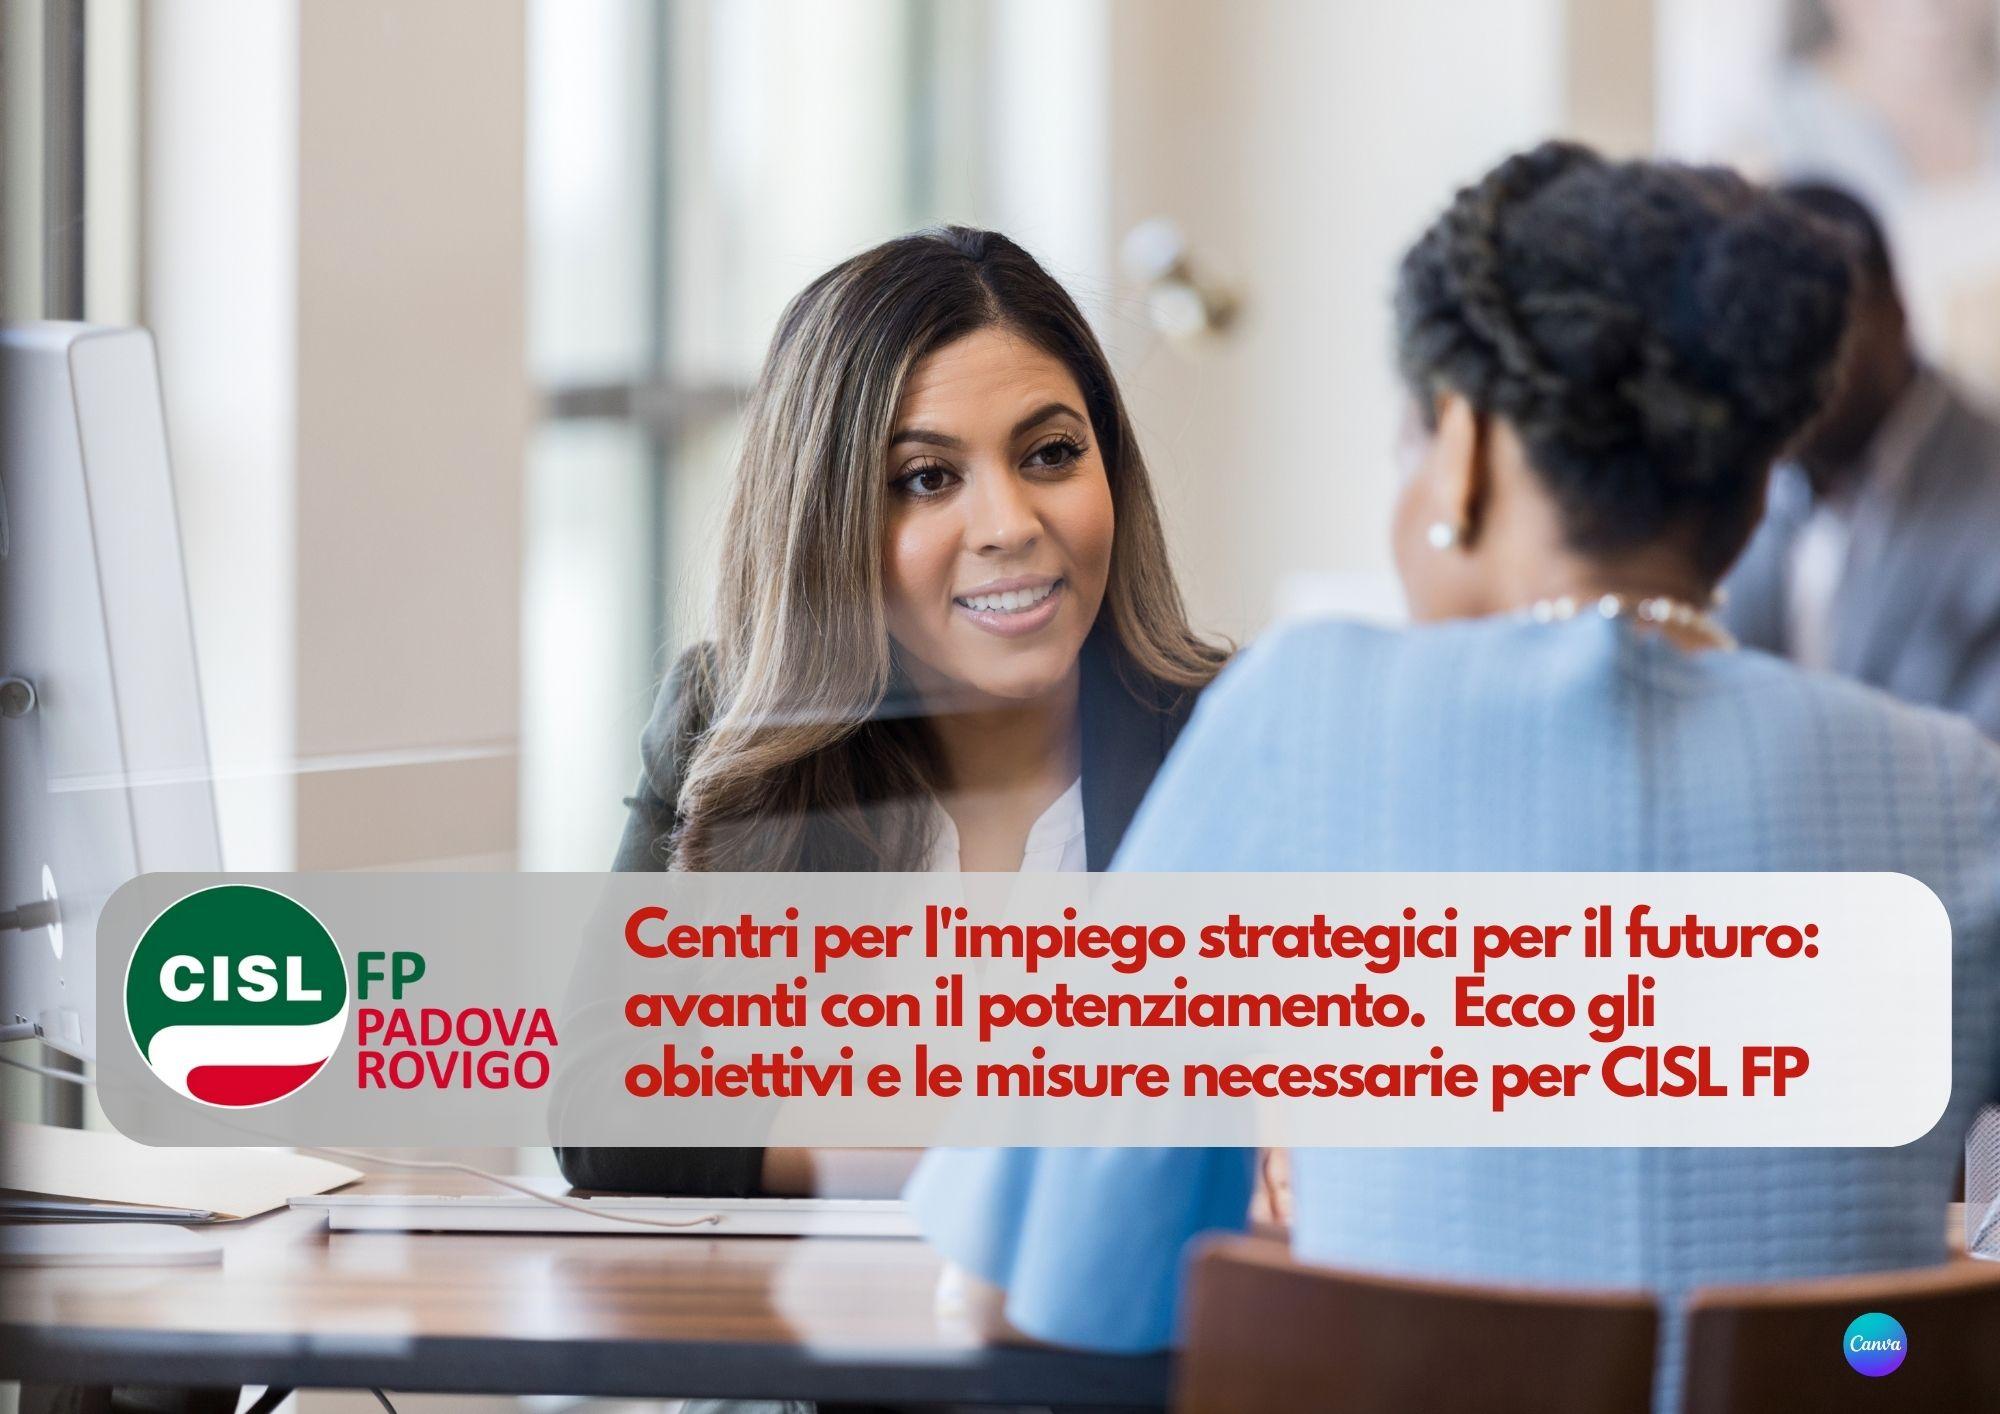 CISL FP Padova Rovigo. Centri per l'impiego strategici per il futuro: avanti con il potenziamento